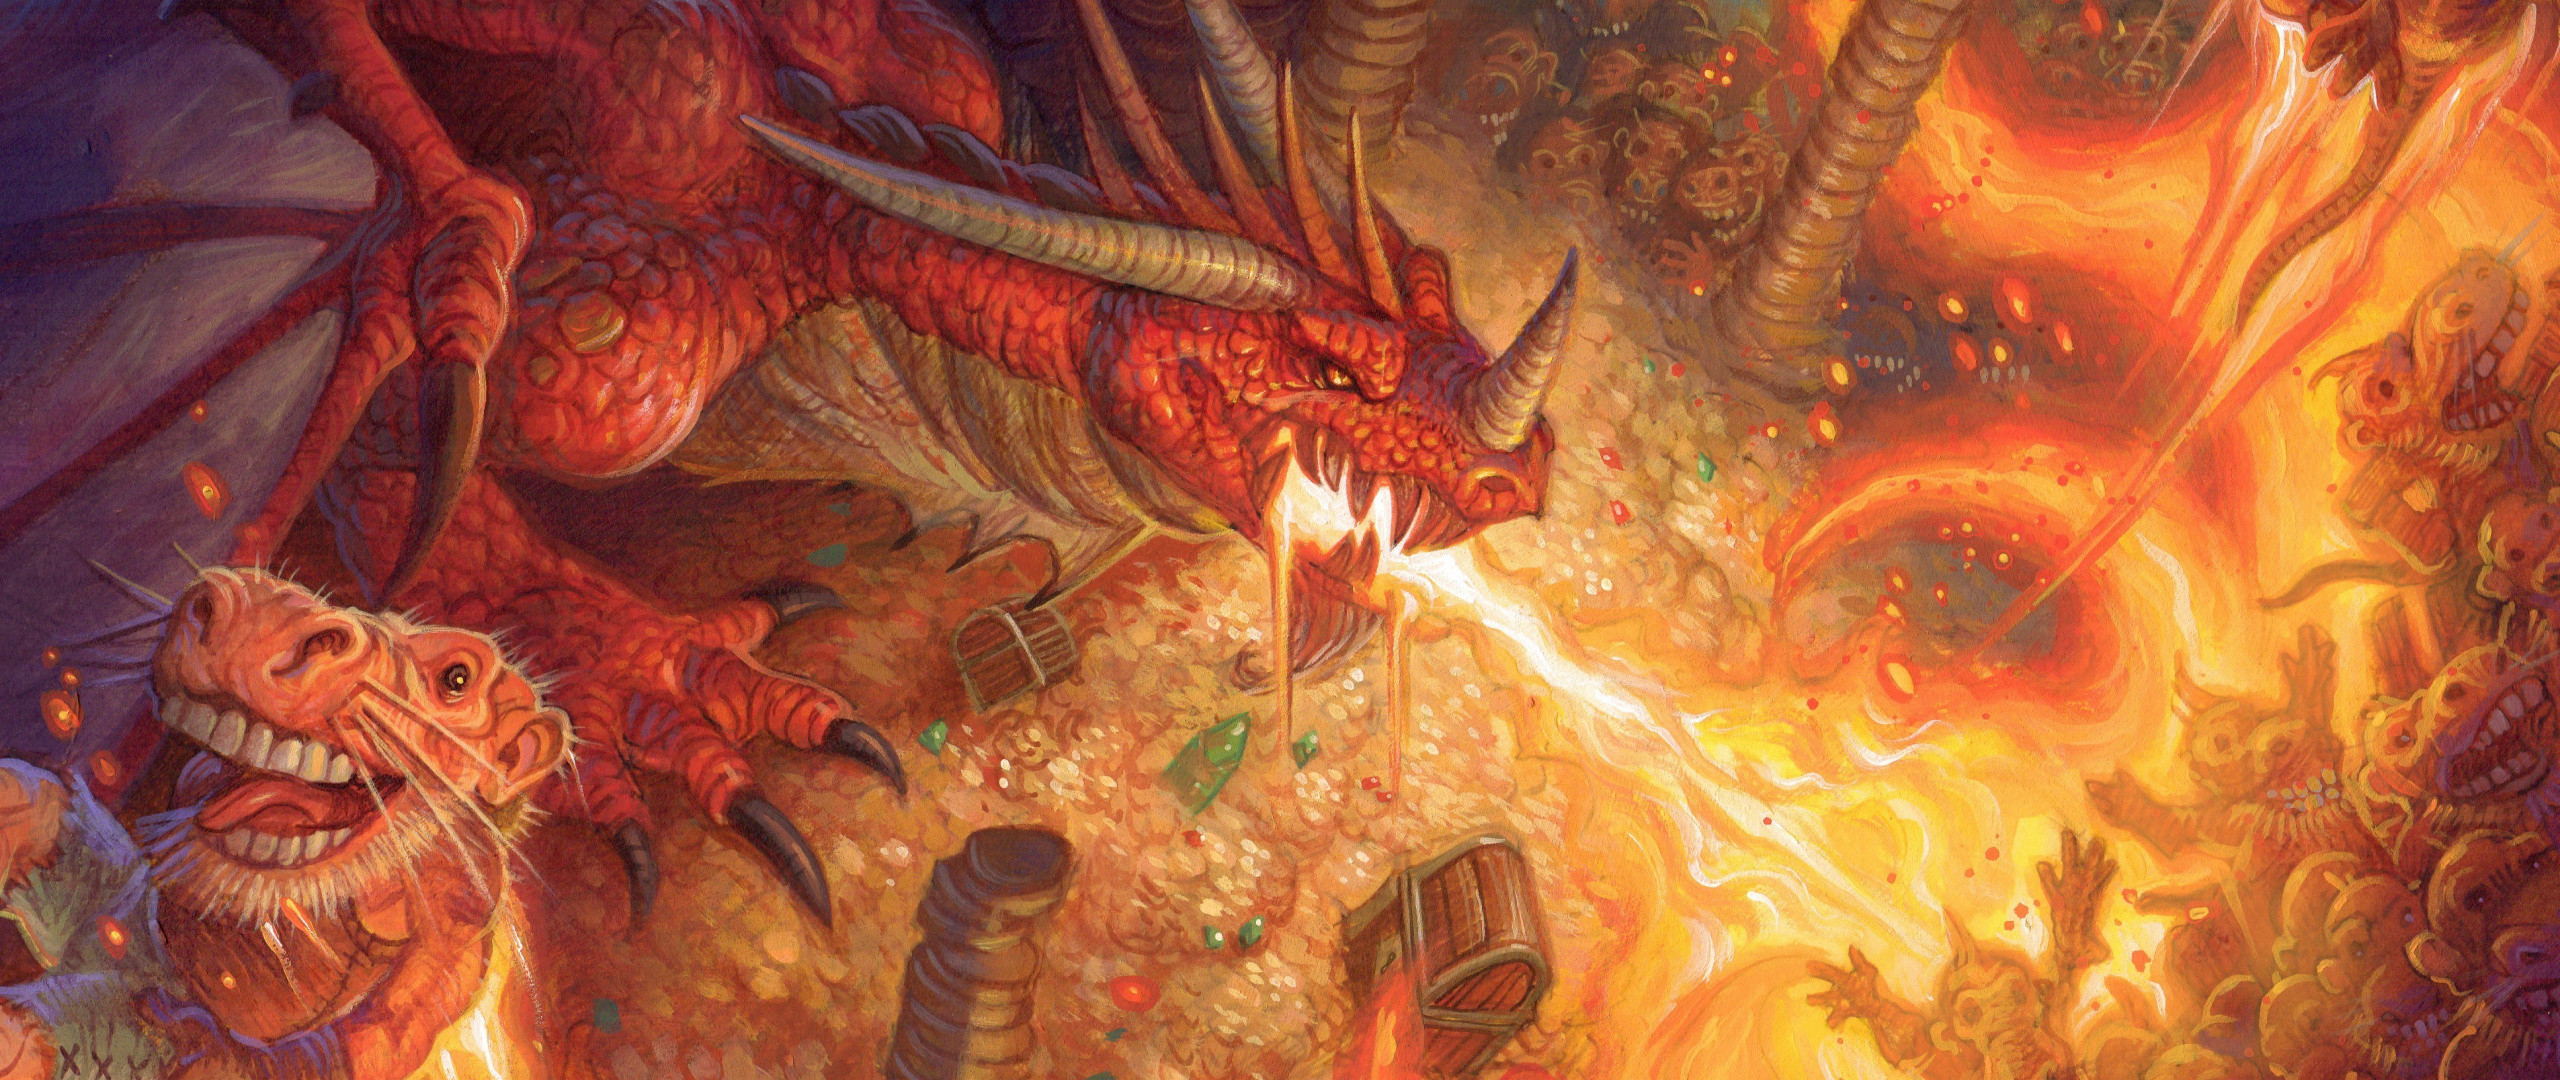 2560x Wallpaper Dragon, Fire, Video Game, Hearthstone 4k Wallpaper Dragon